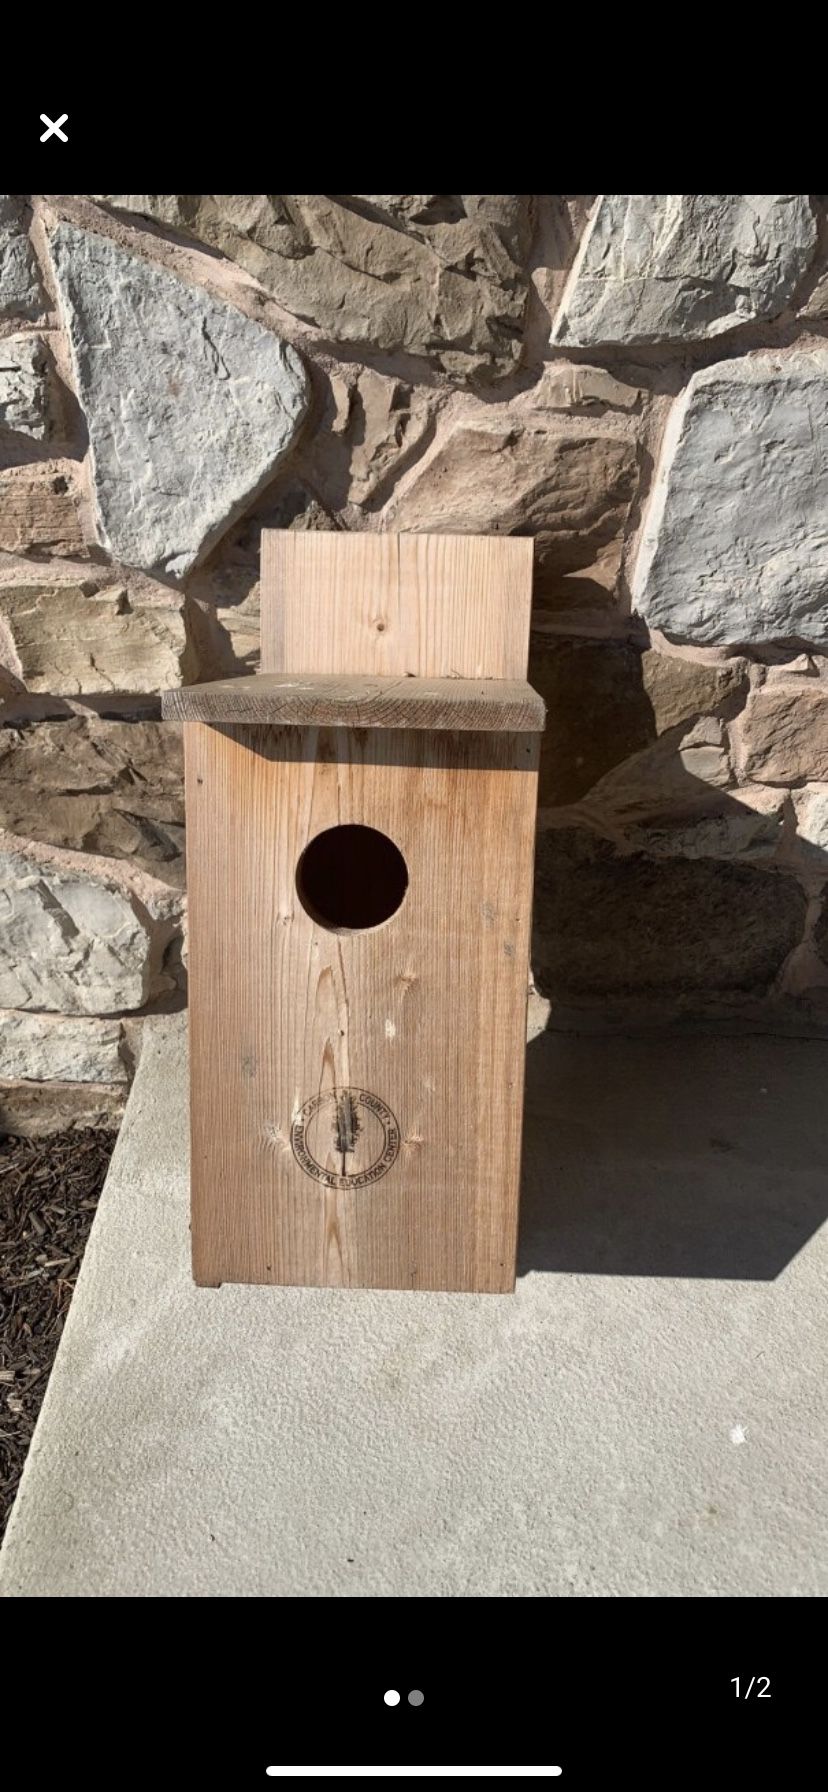 Screech owl house never used 3” hole 16”x9”x10”box